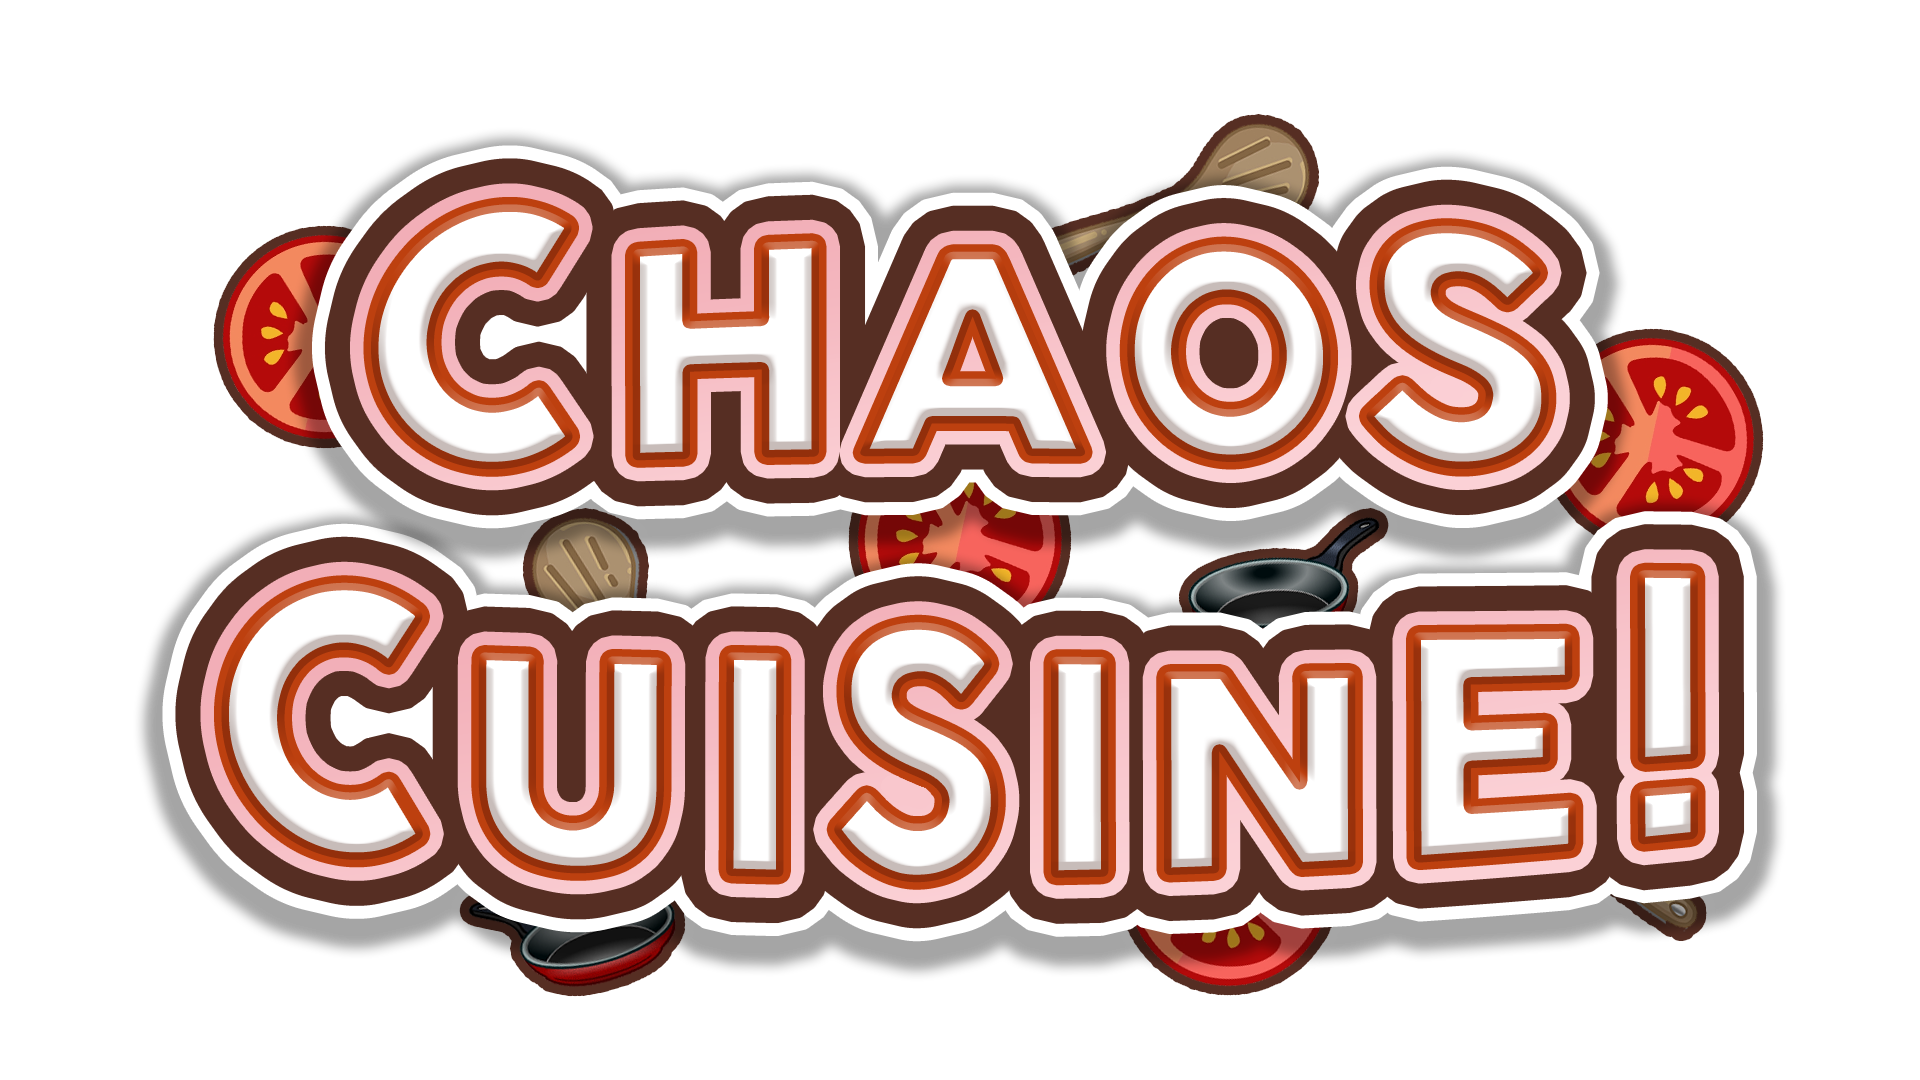 Chaos Cuisine